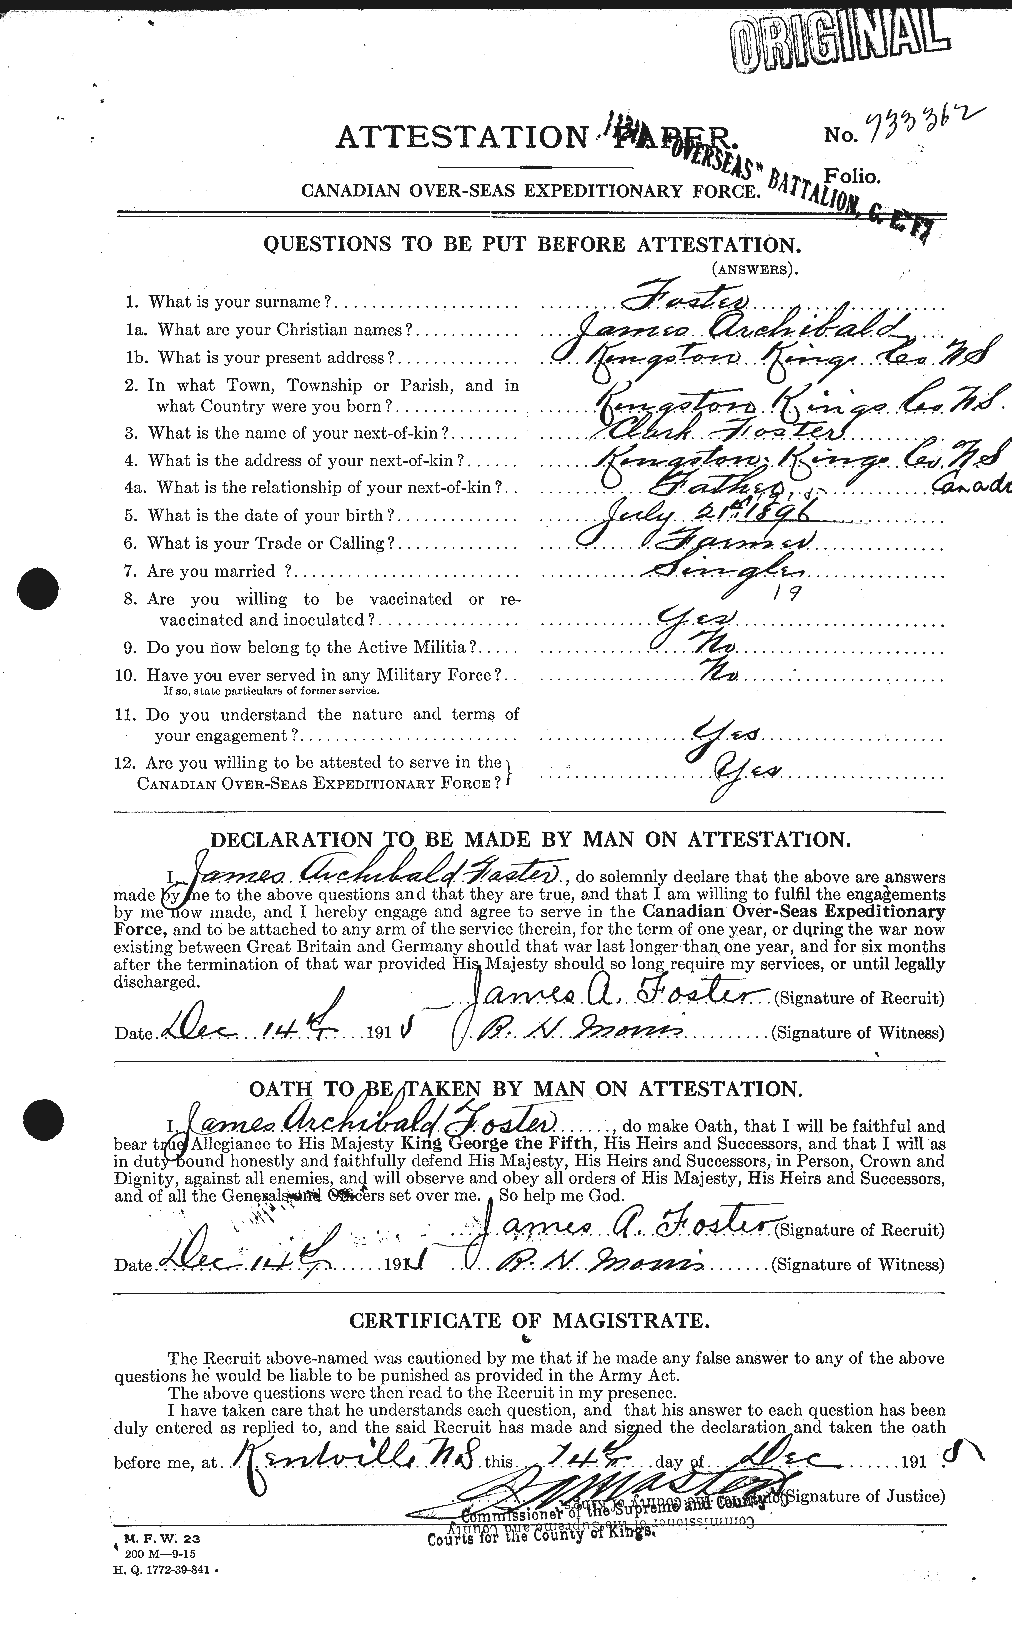 Dossiers du Personnel de la Première Guerre mondiale - CEC 333297a